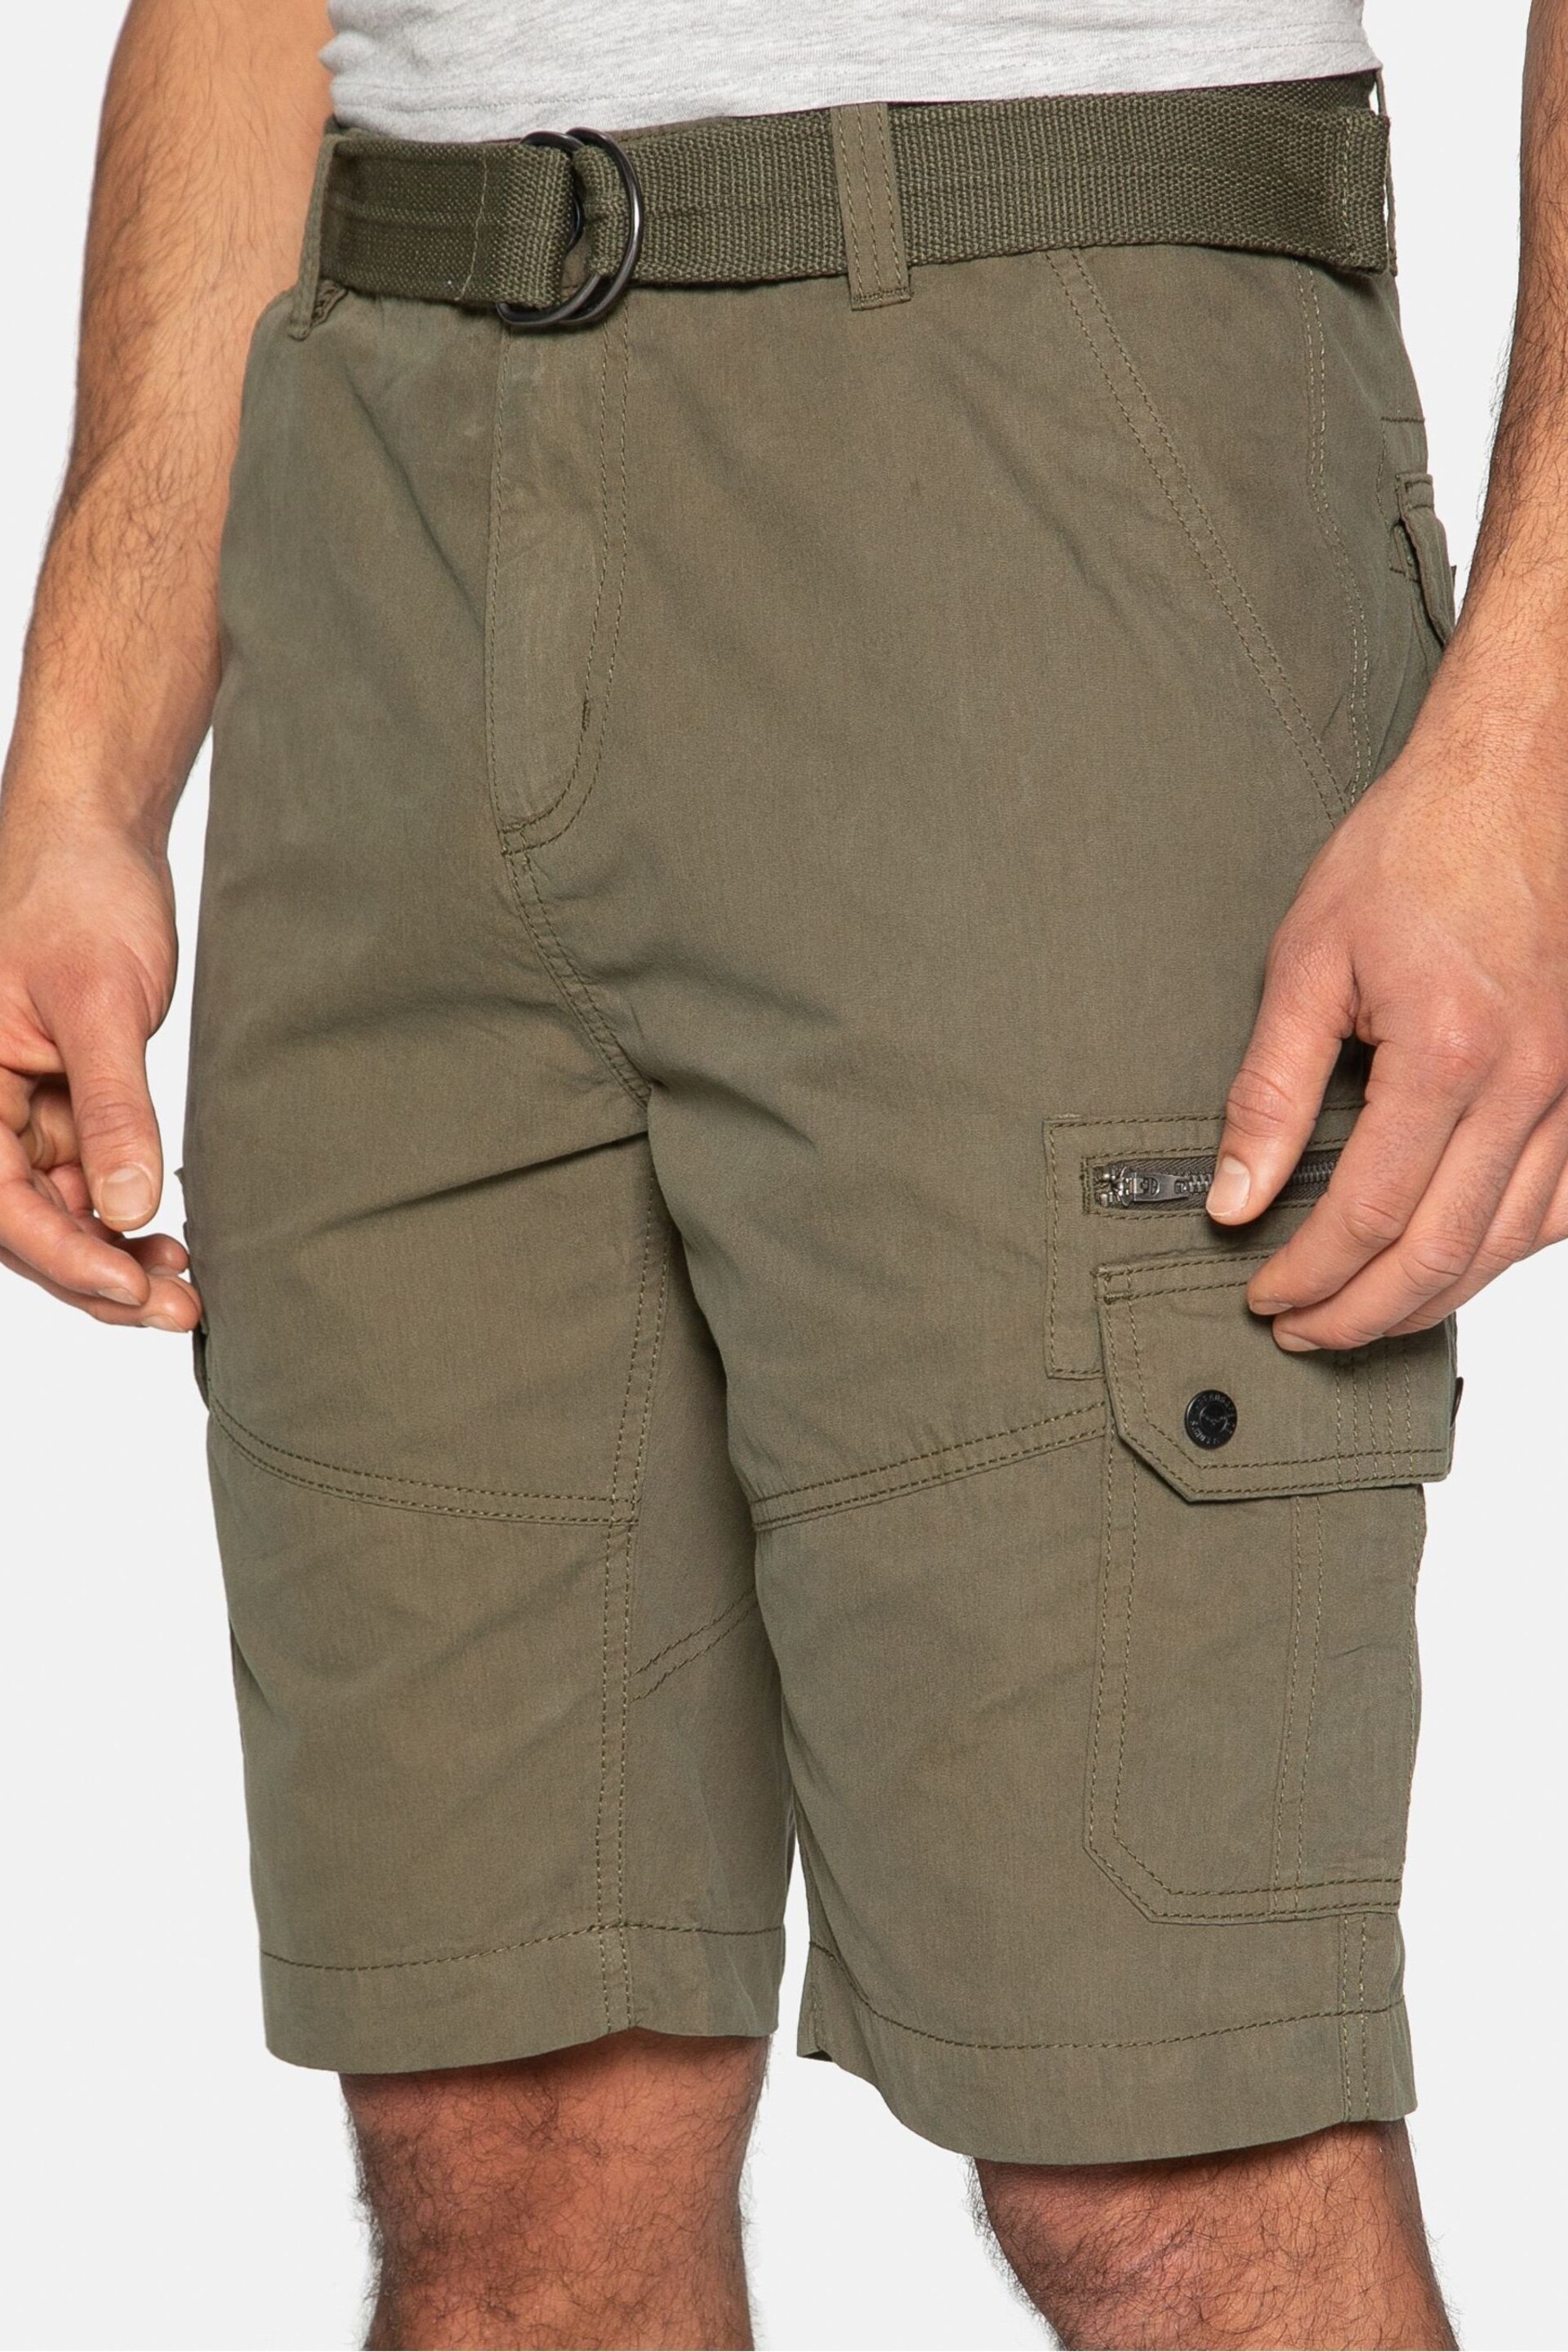 Threadbare Khaki Cotton Blend Belted Cargo Shorts - Image 4 of 4